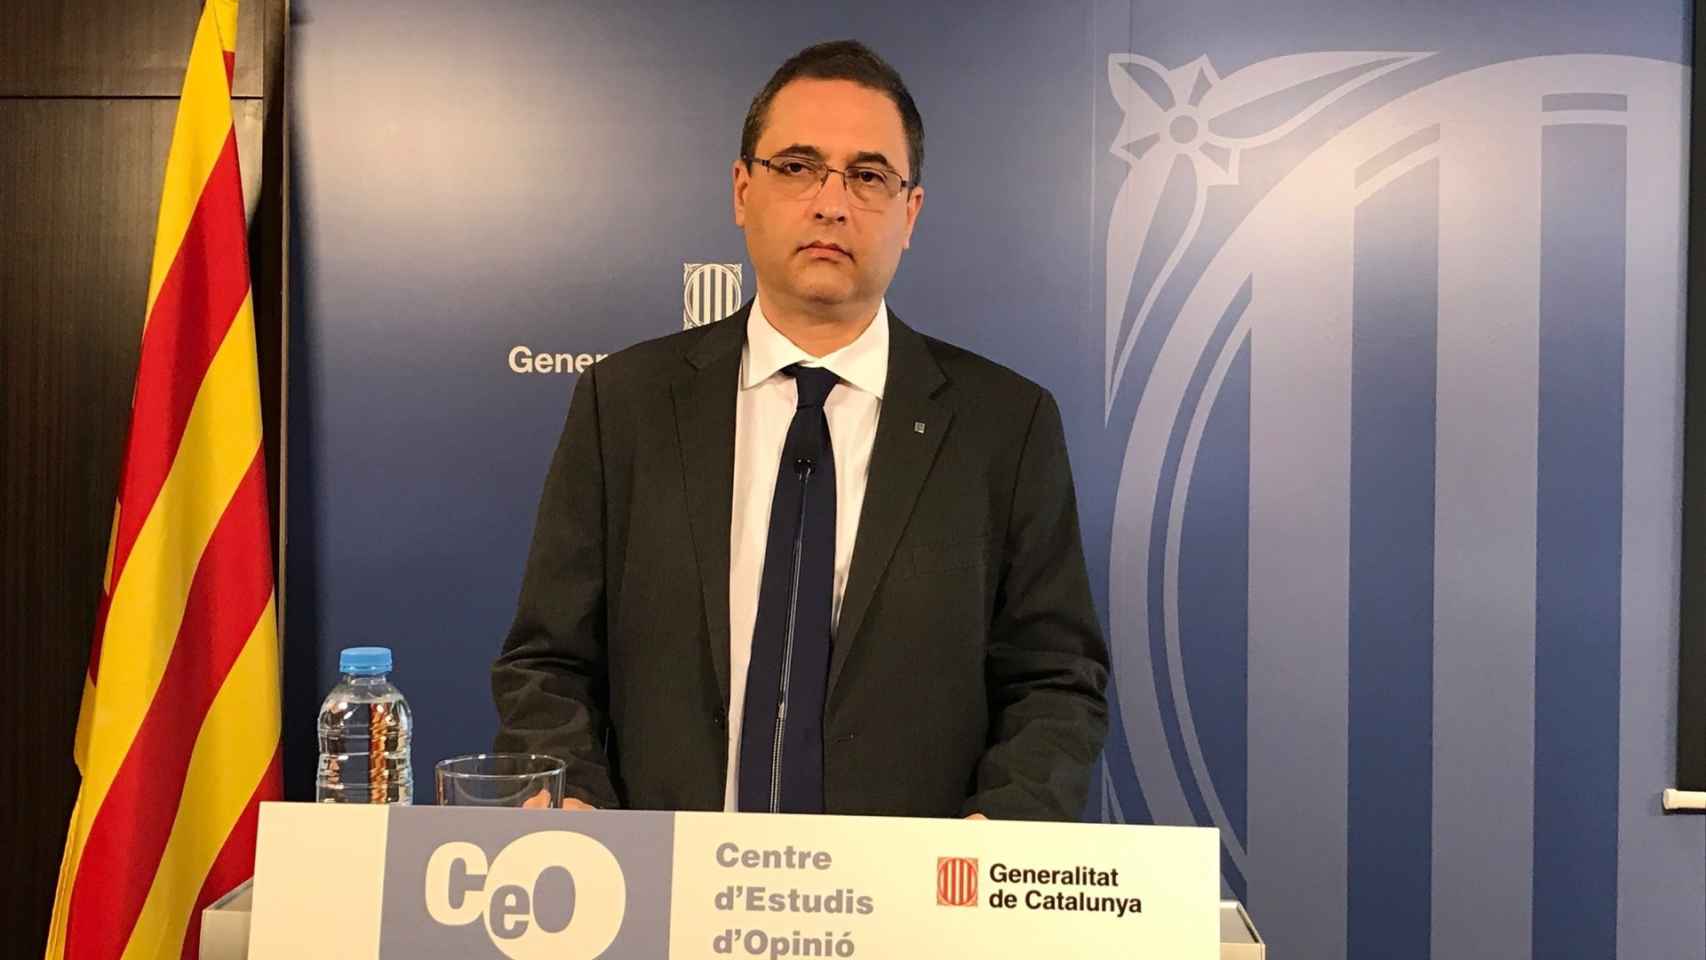 El PSC ha pedido la comparecencia de Jordi Argelaguet, director CEO (Centro de Estudios de Opinió) /CG